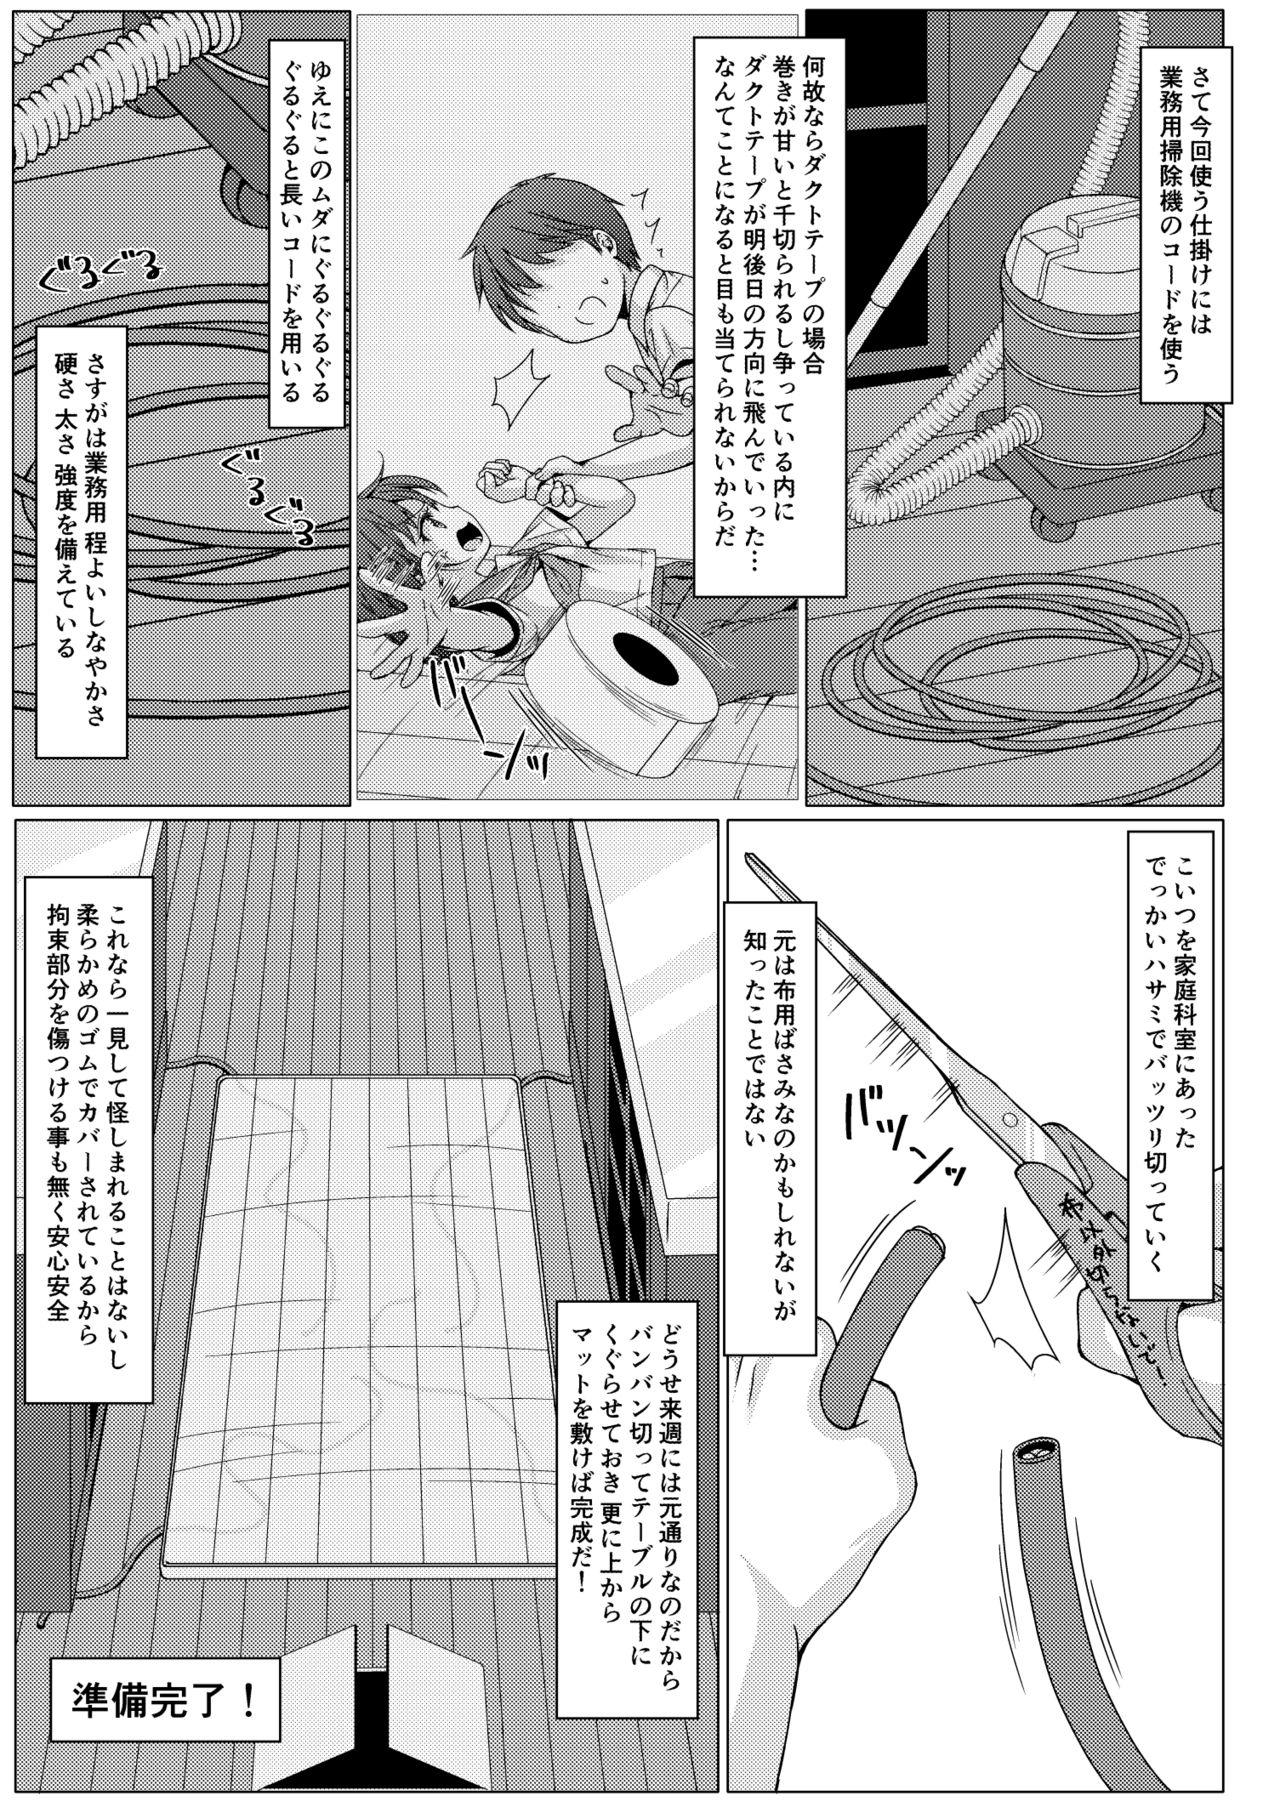 Cavala Isshuukan de Mugen Loop Shiteru to Kigatsuita kara, Kounai ni Yaribeya Tsukutta! 2 - Original Denmark - Page 4